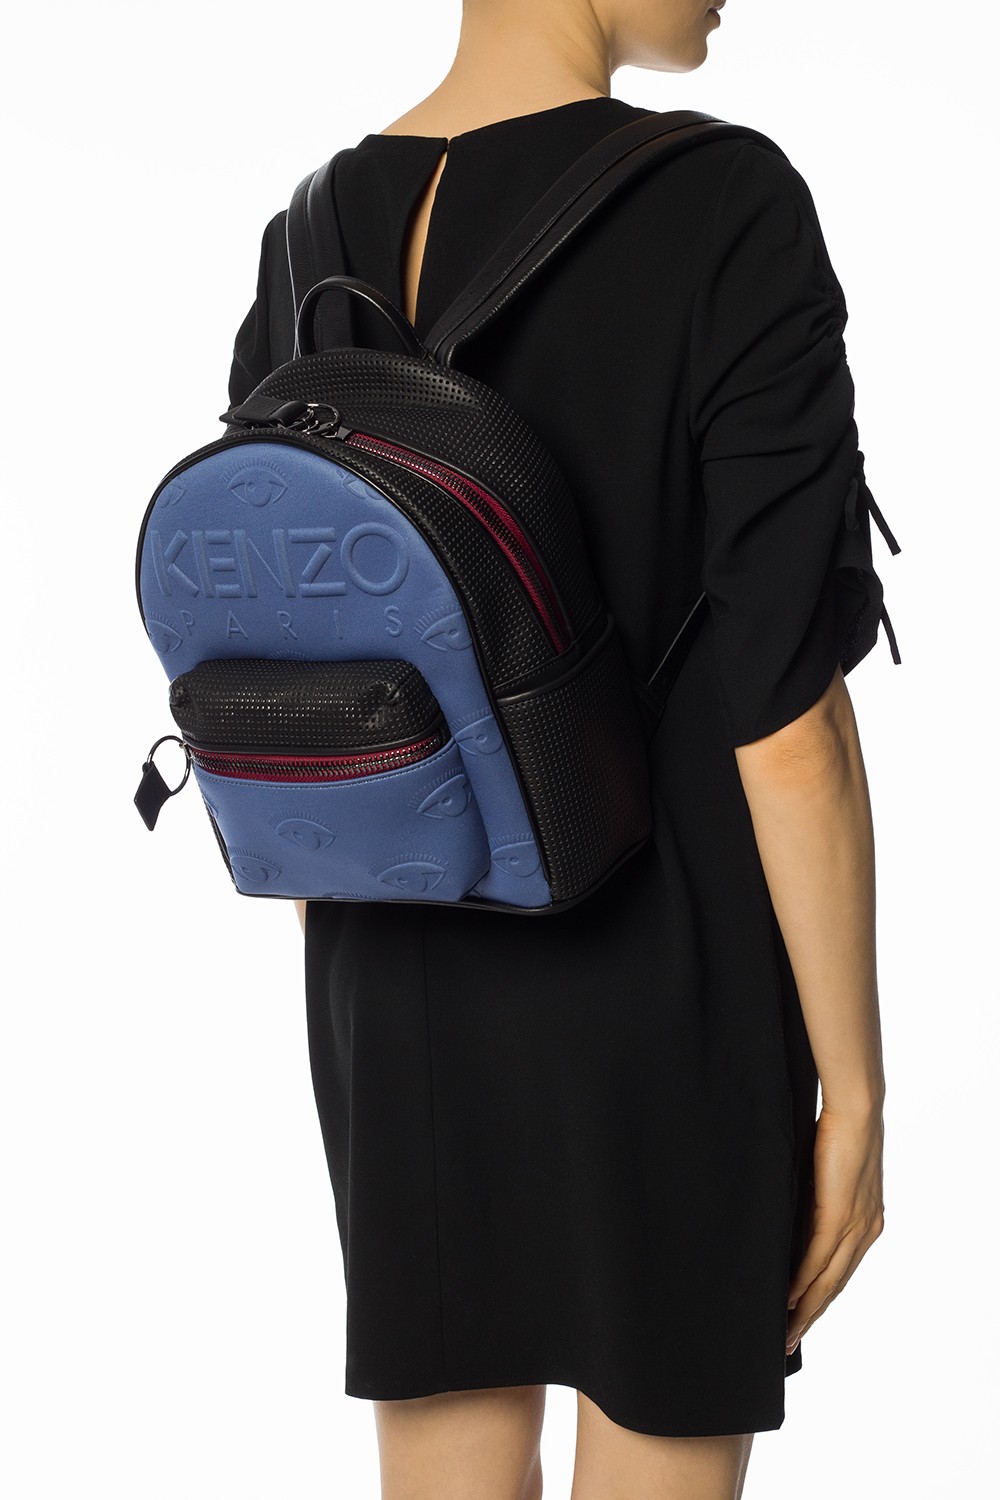 kenzo kombo backpack